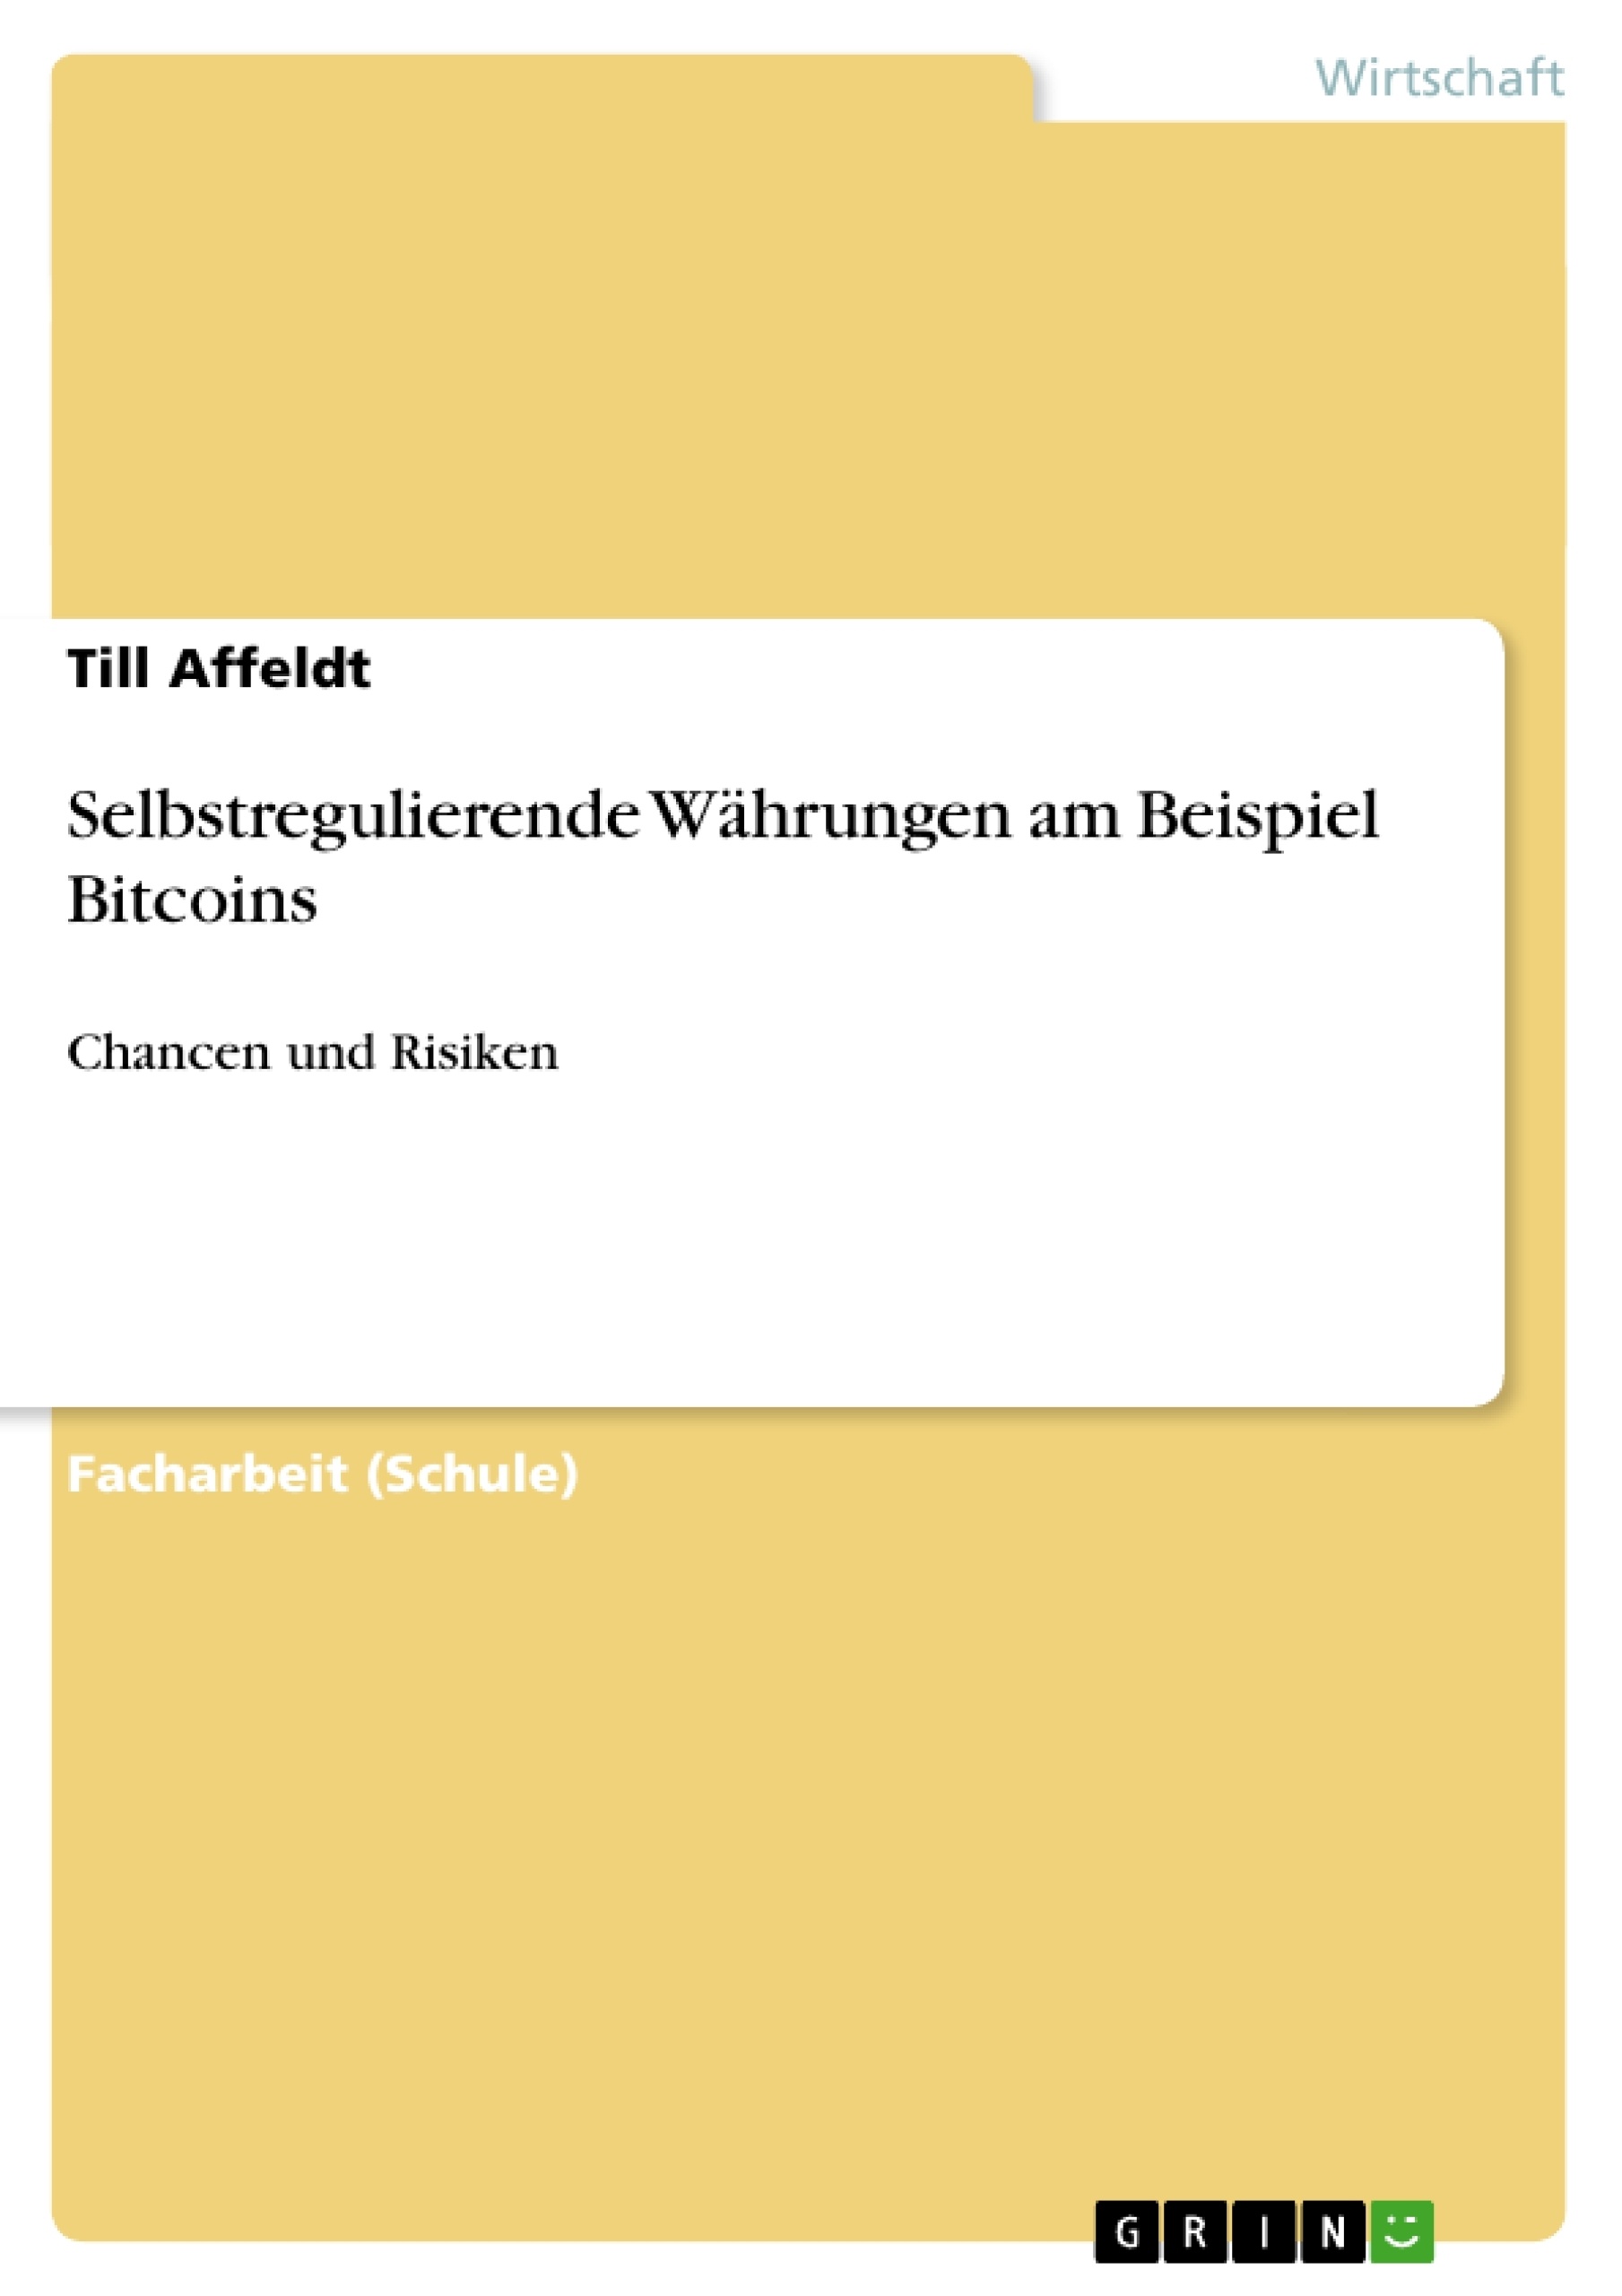 Título: Selbstregulierende Währungen am Beispiel Bitcoins